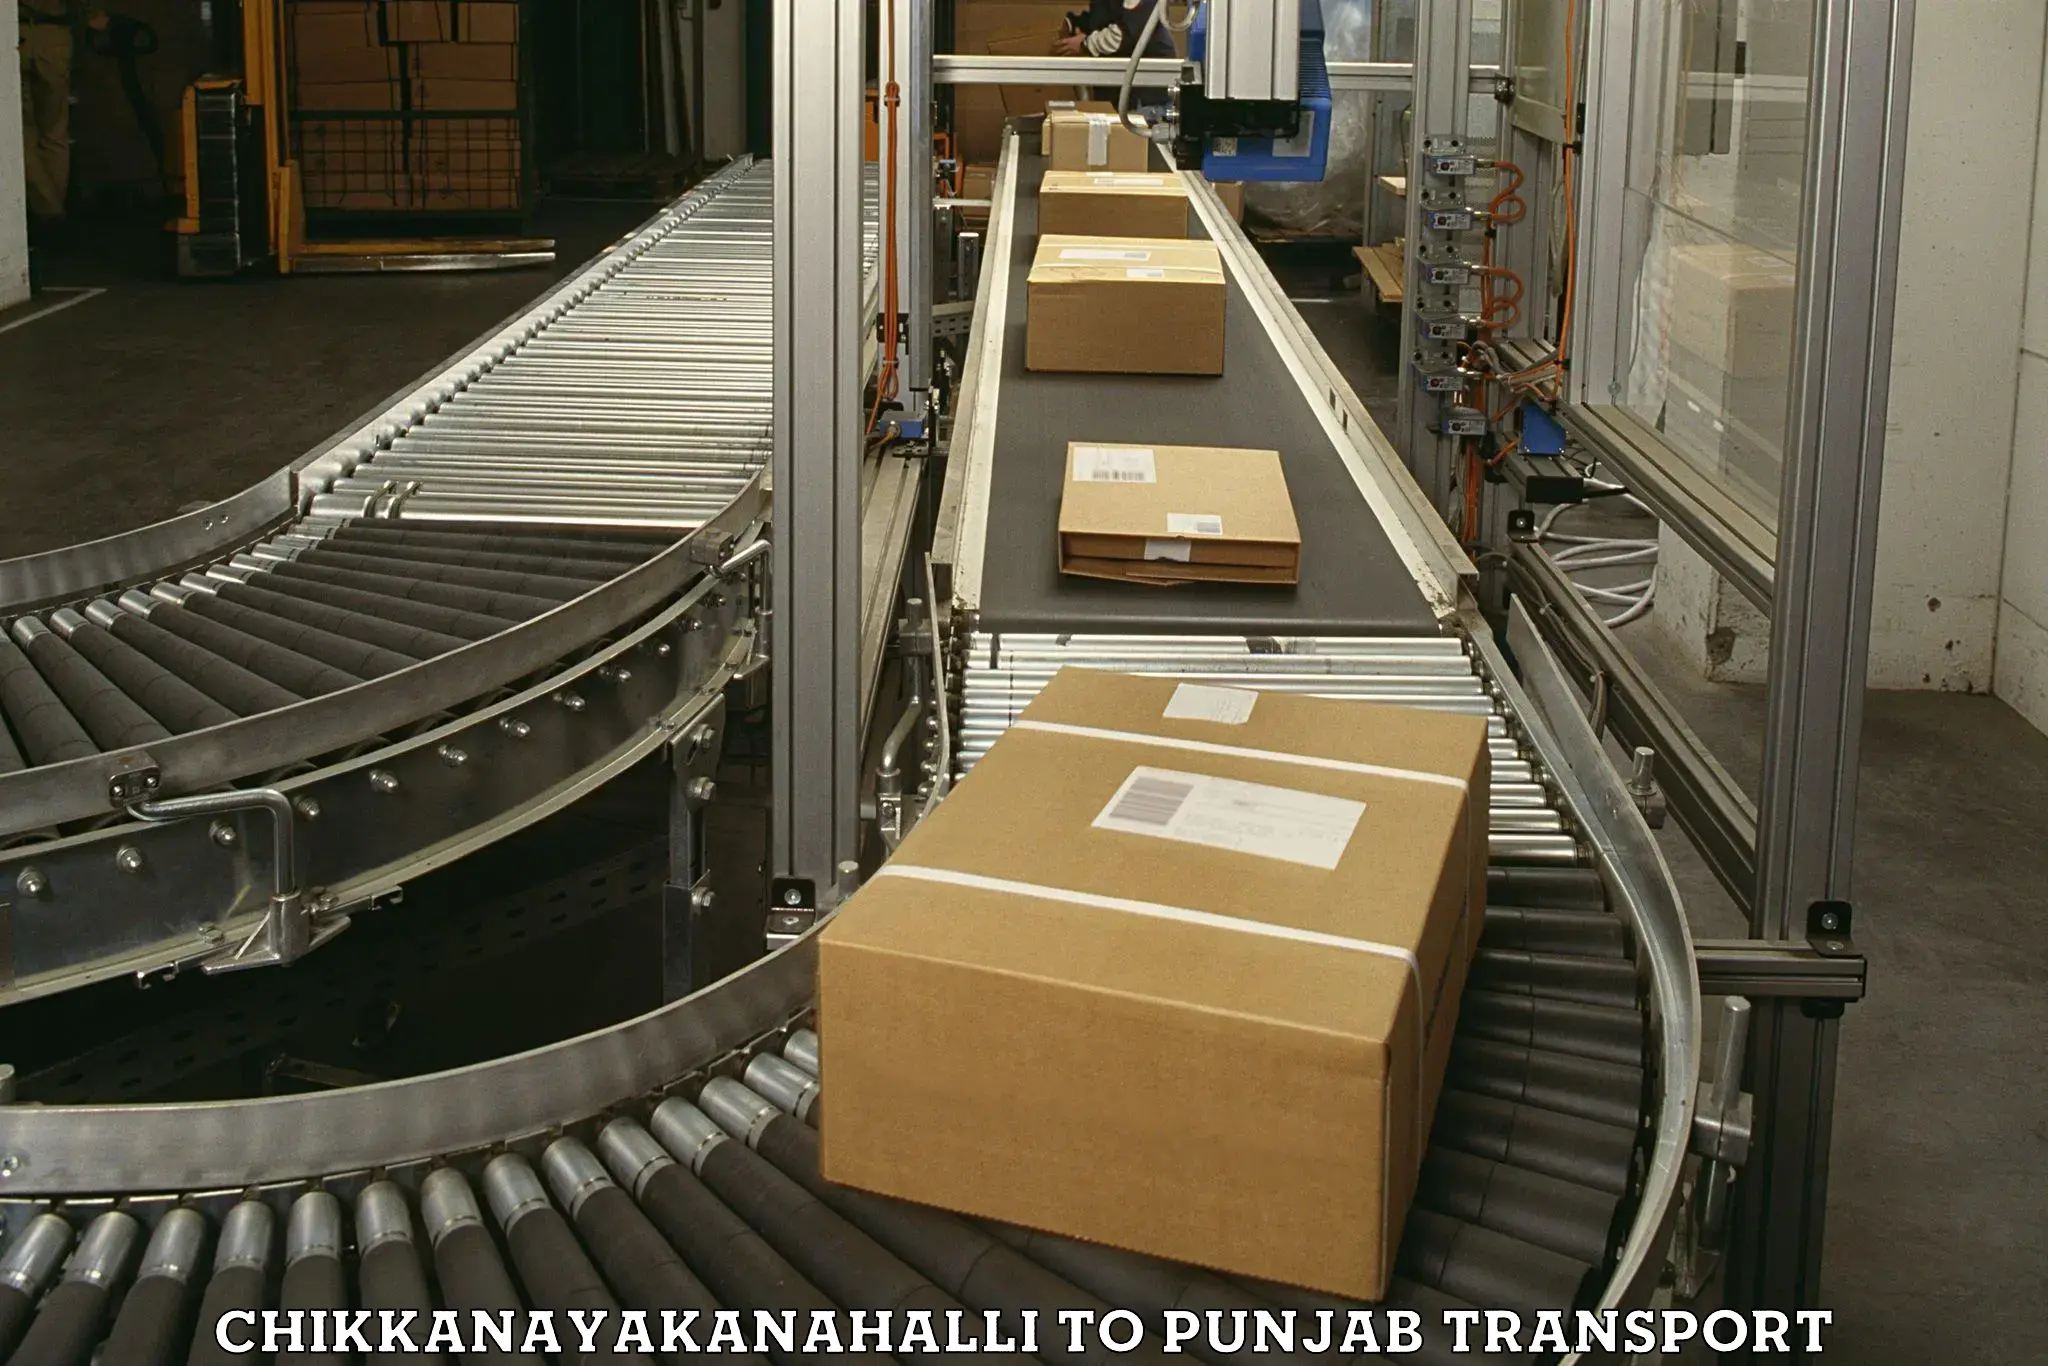 Shipping partner in Chikkanayakanahalli to Punjab